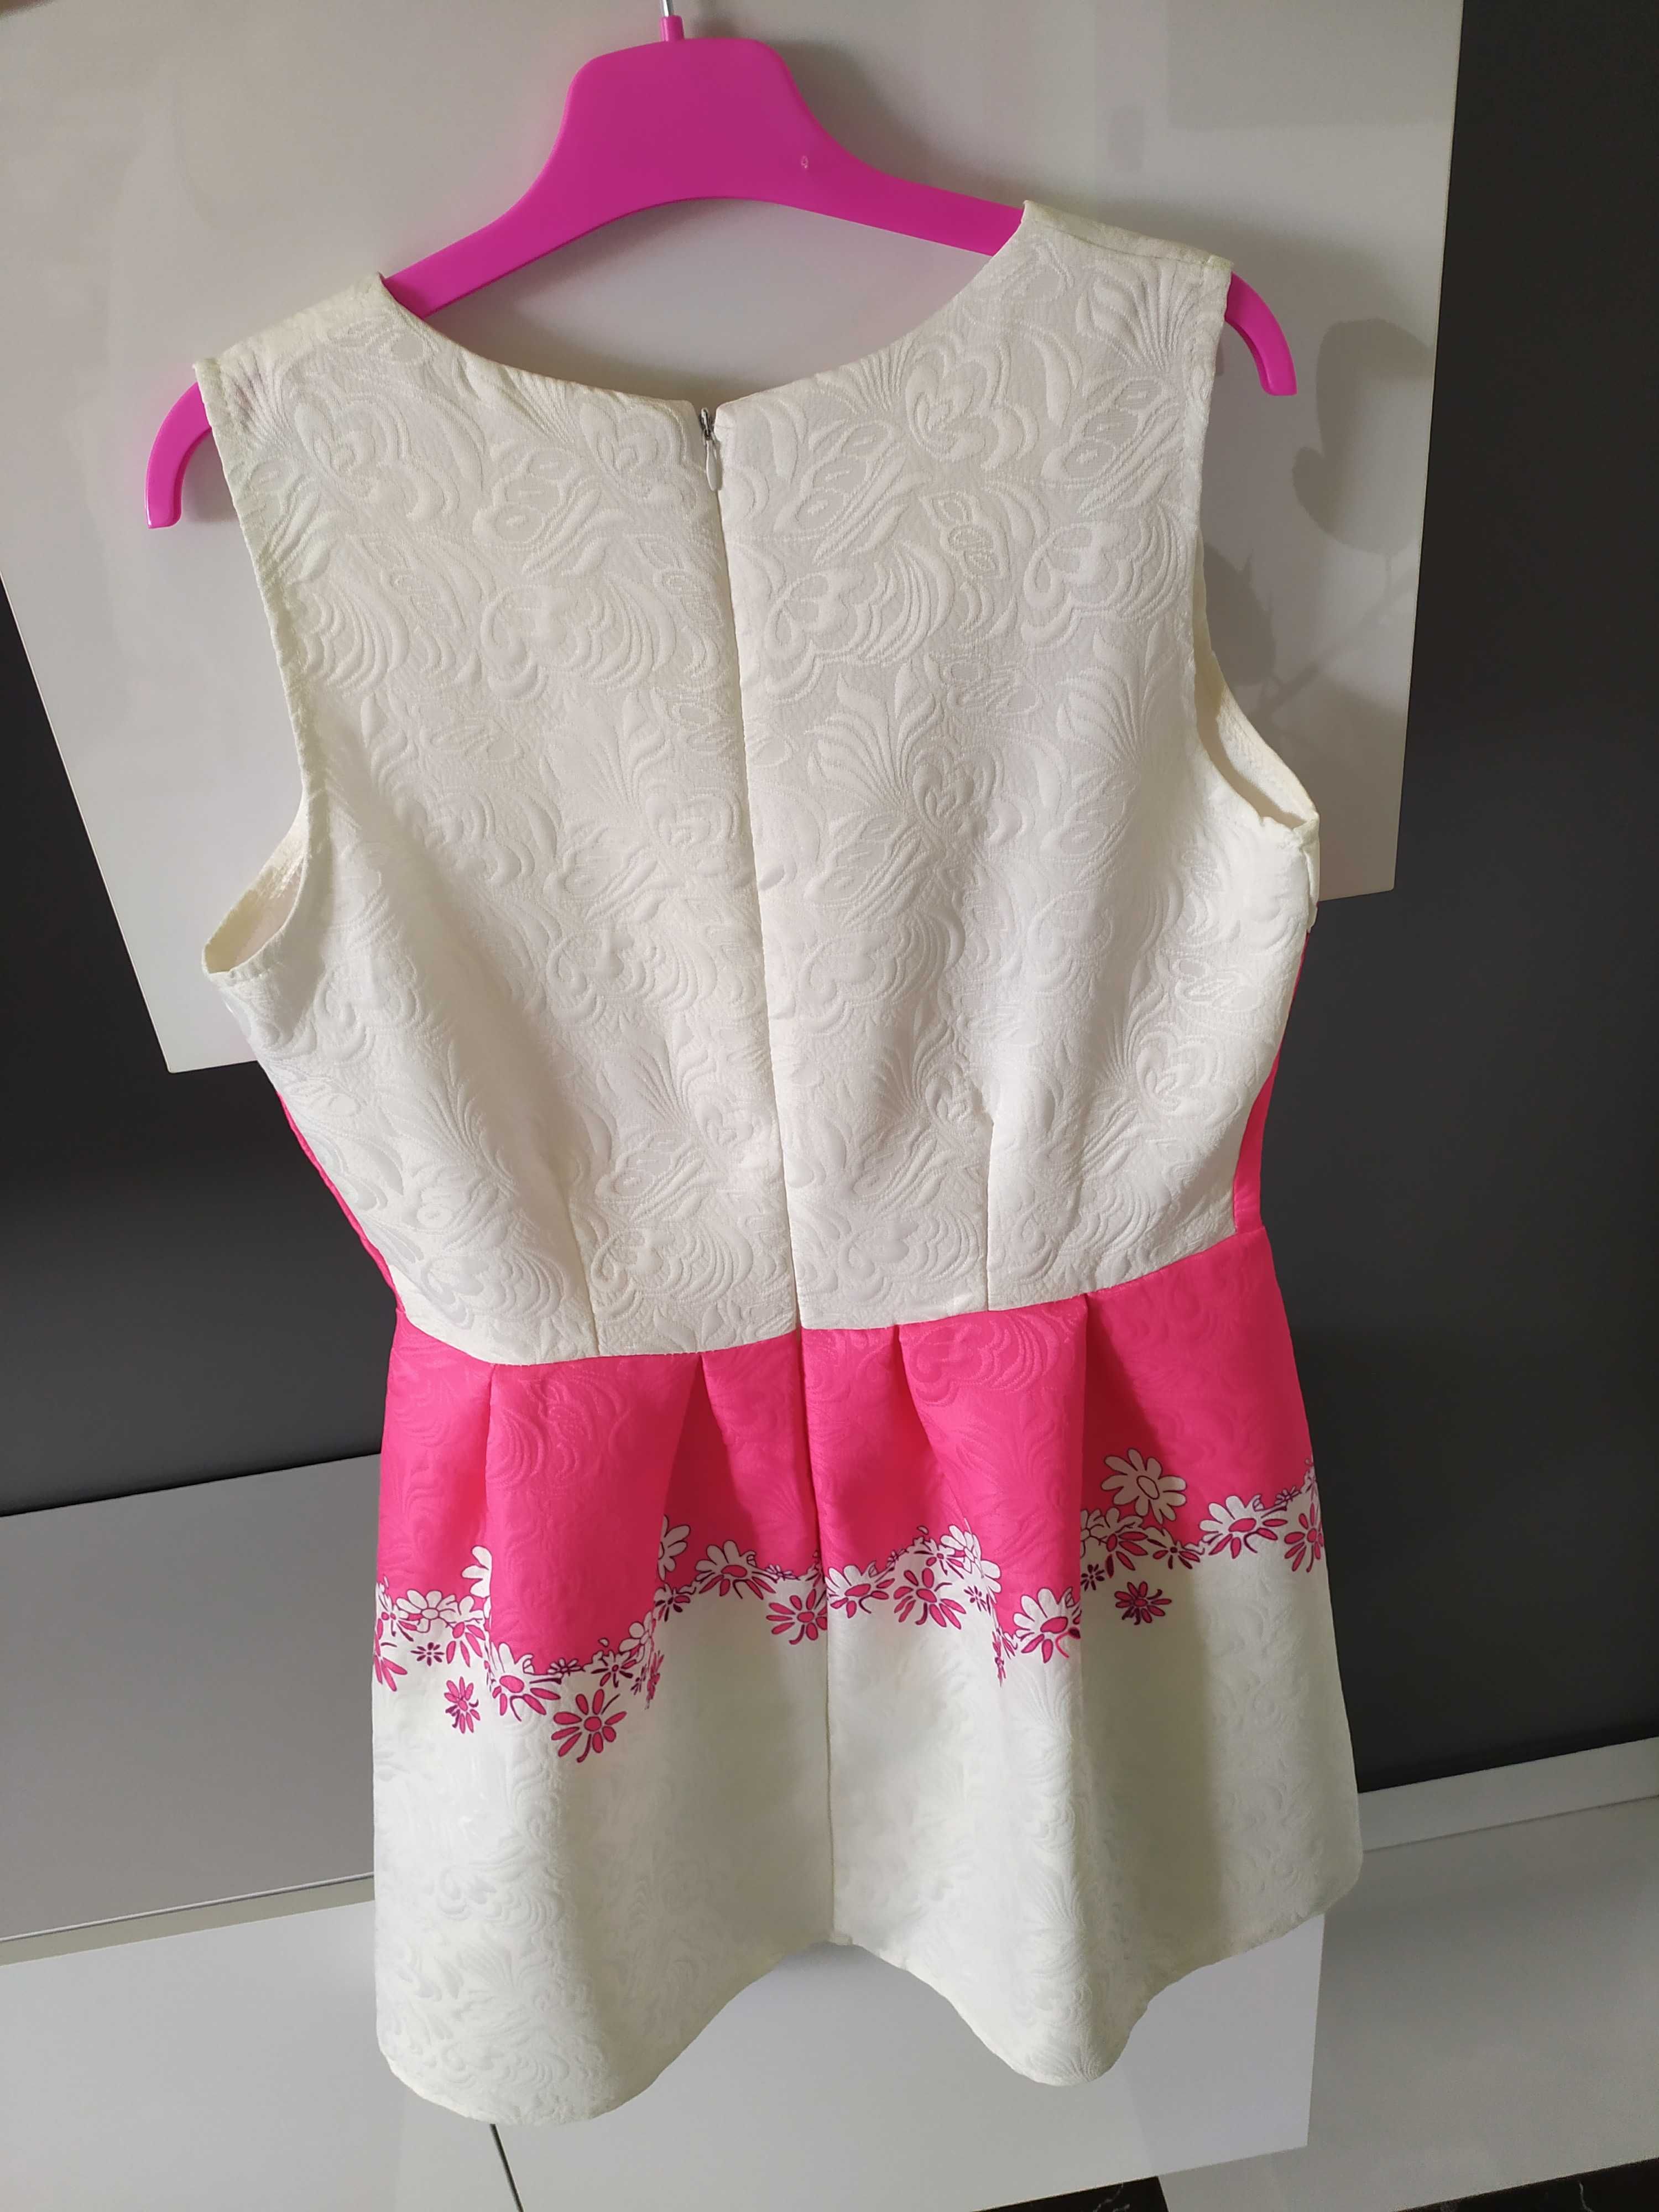 Biało-różowa sukienka żakardowa kwiatuszki M chrzest komunia wesele